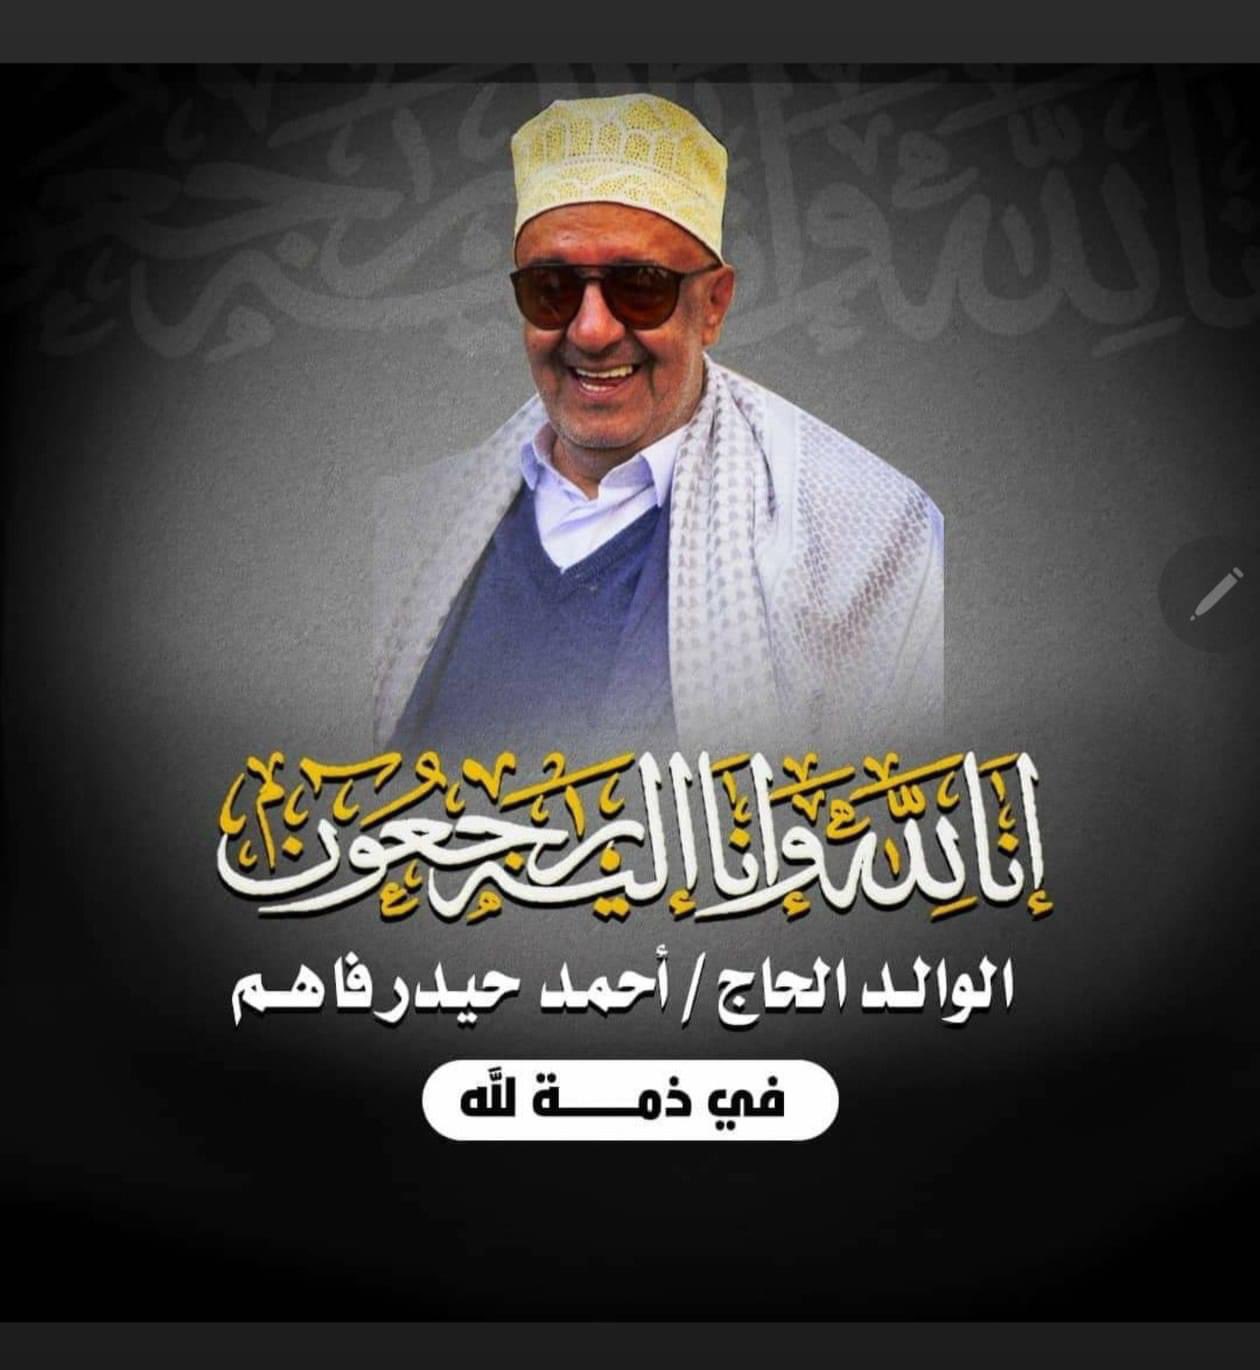 عاجل.. وفاة رجل الاعمال اليمني احمد حيدر فاهم في عدن لهذاالسبب،،